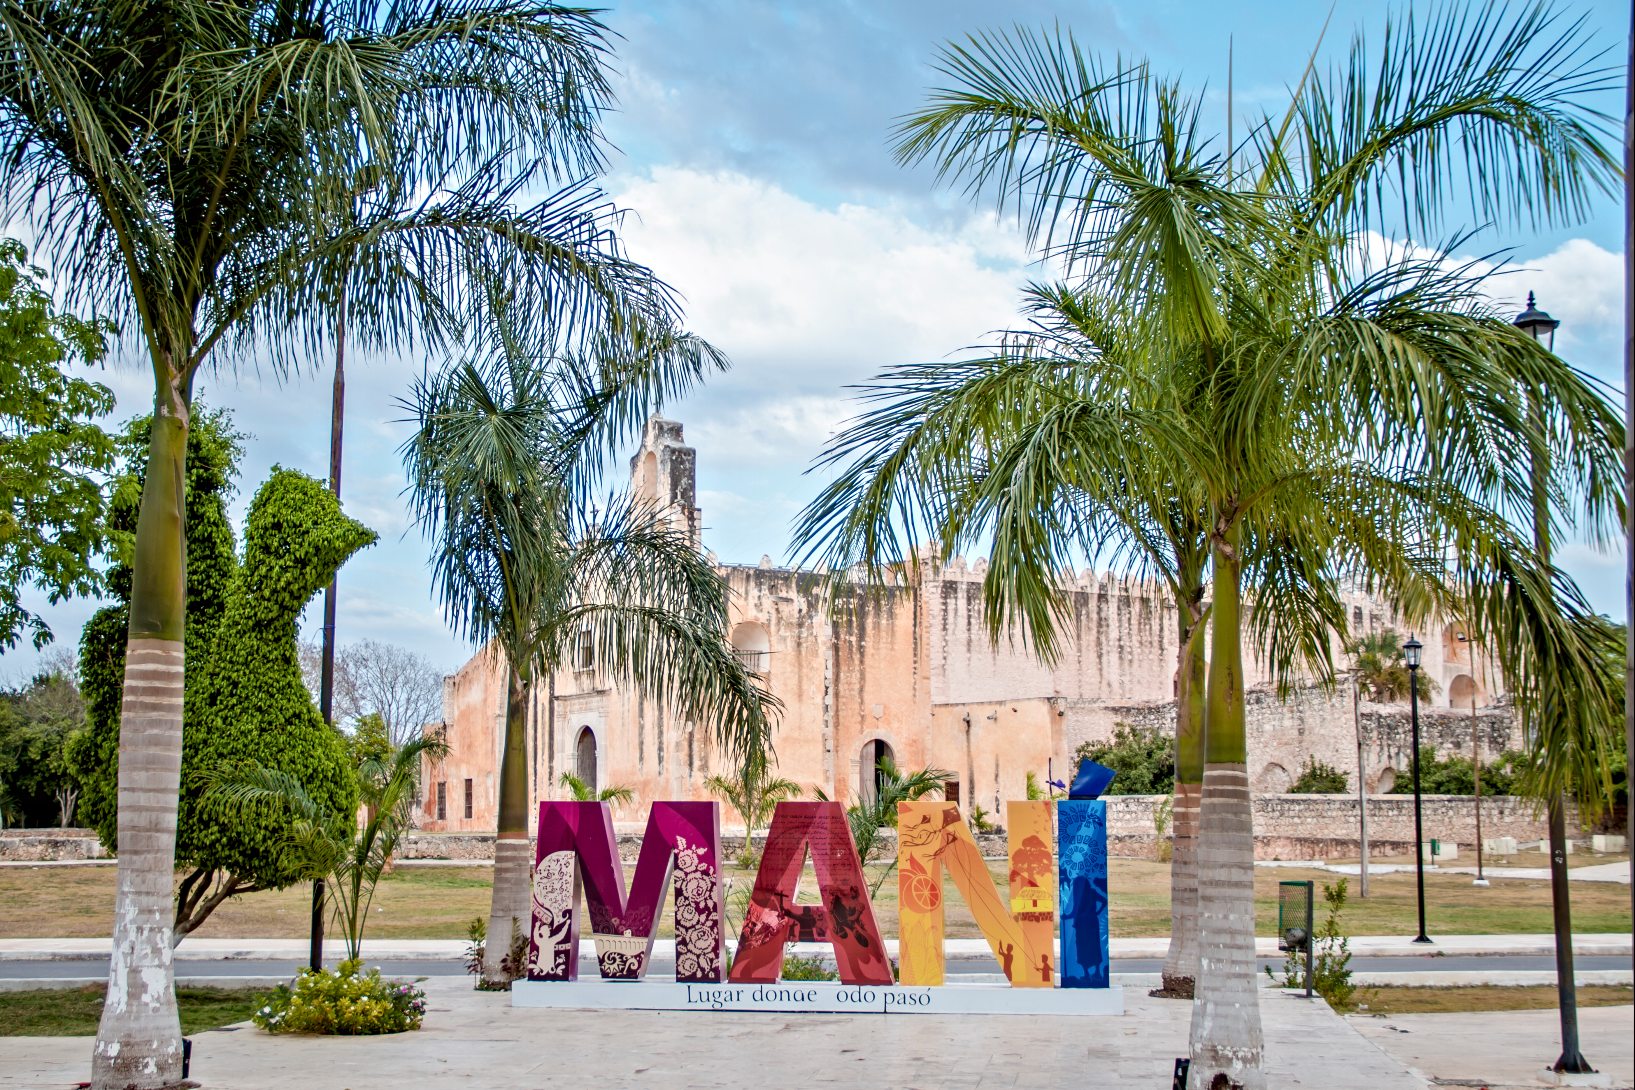 Main Park of Mani Yucatan